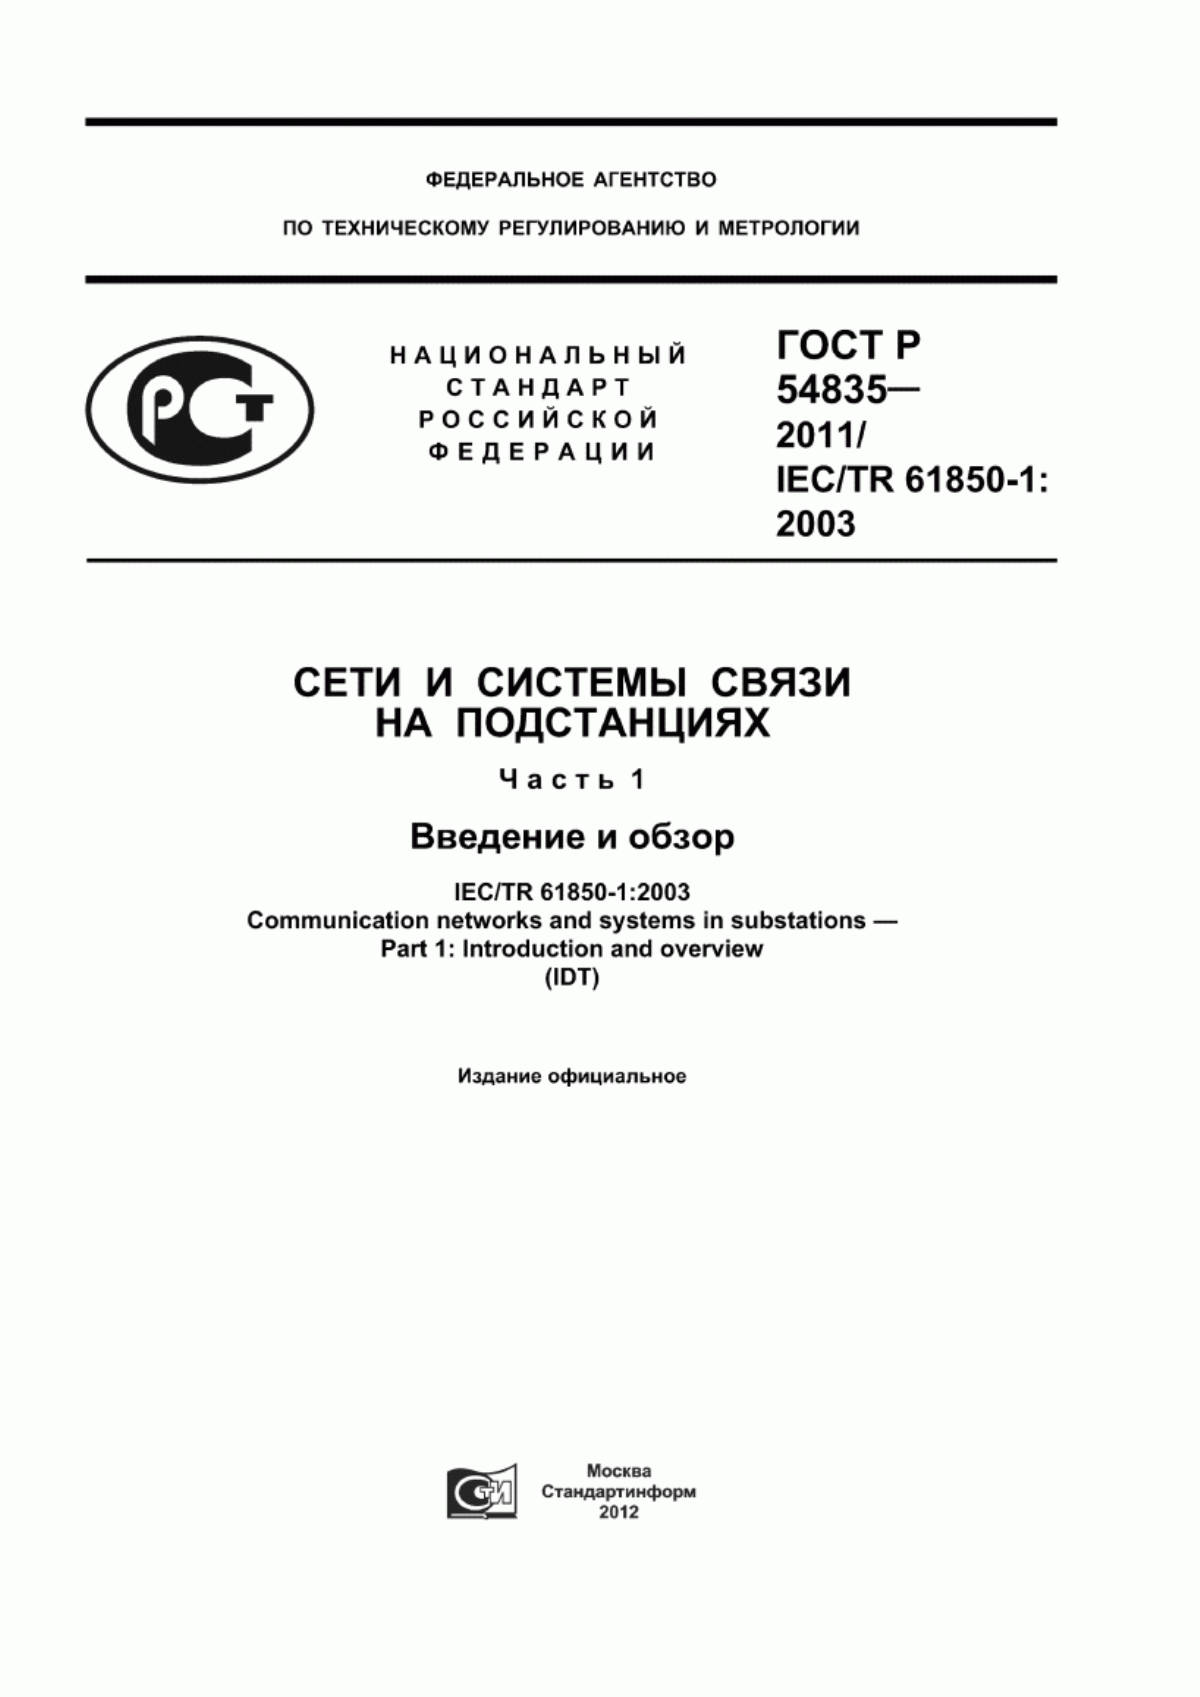 ГОСТ Р 54835-2011 Сети и системы связи на подстанциях. Часть 1. Введение и обзор